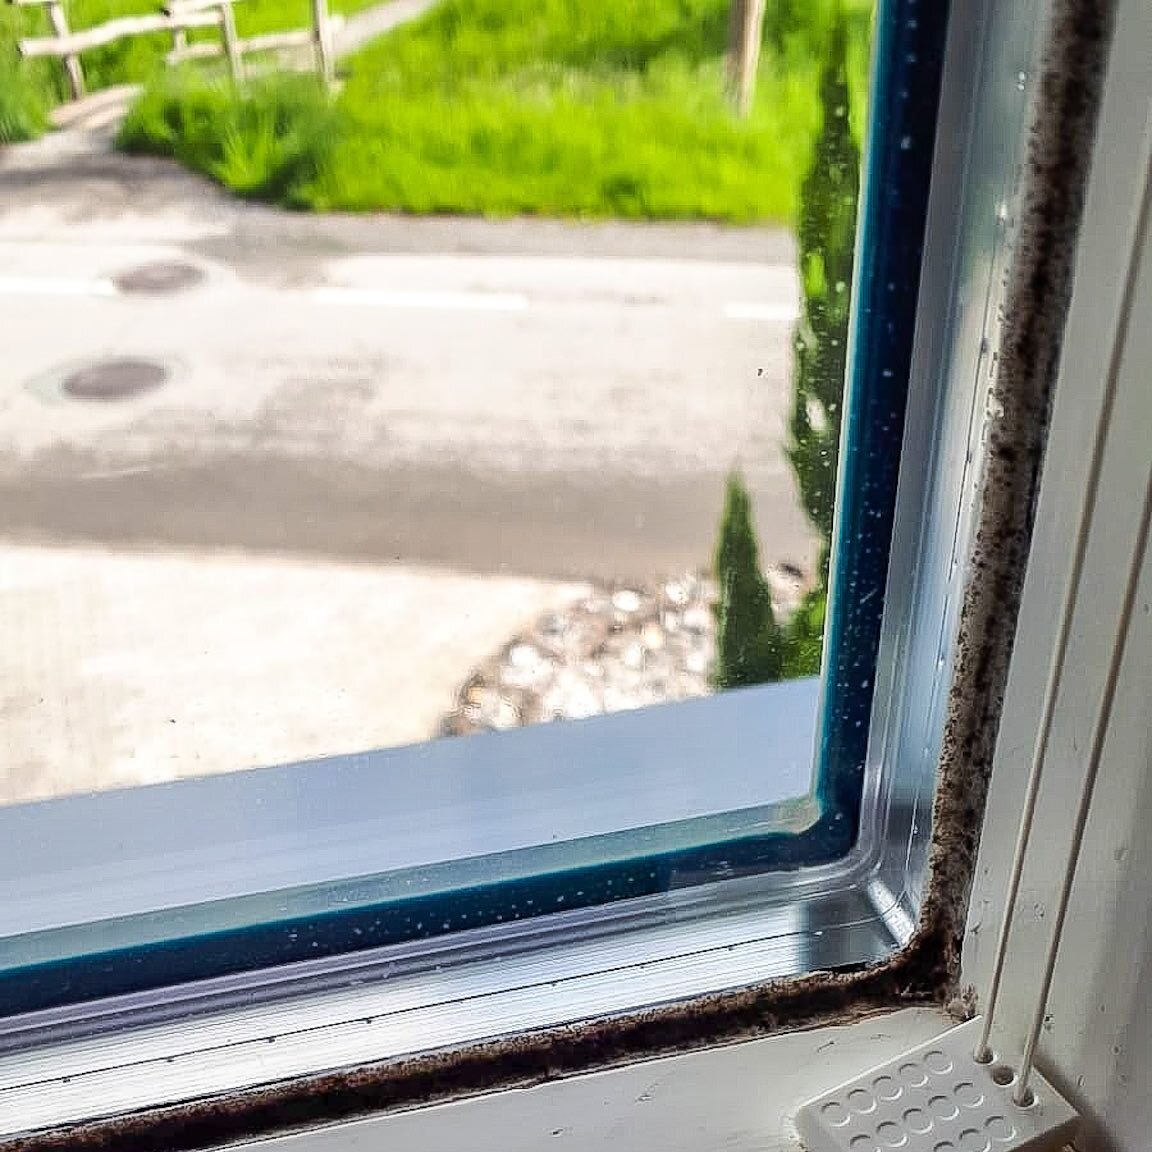 Silikonfugen an Fenstern erneuern
Probleme mit Wasser an dem Fenster?
Zu viel Feuchtigkeit in der Wohnung l&auml;sst die Silikonfugen schnell verschimmeln!
❌Wir sind Profis f&uuml;r Silikonfugen &amp; Schimmel!❌

 #silikonfugenerneuern #silikonfugena